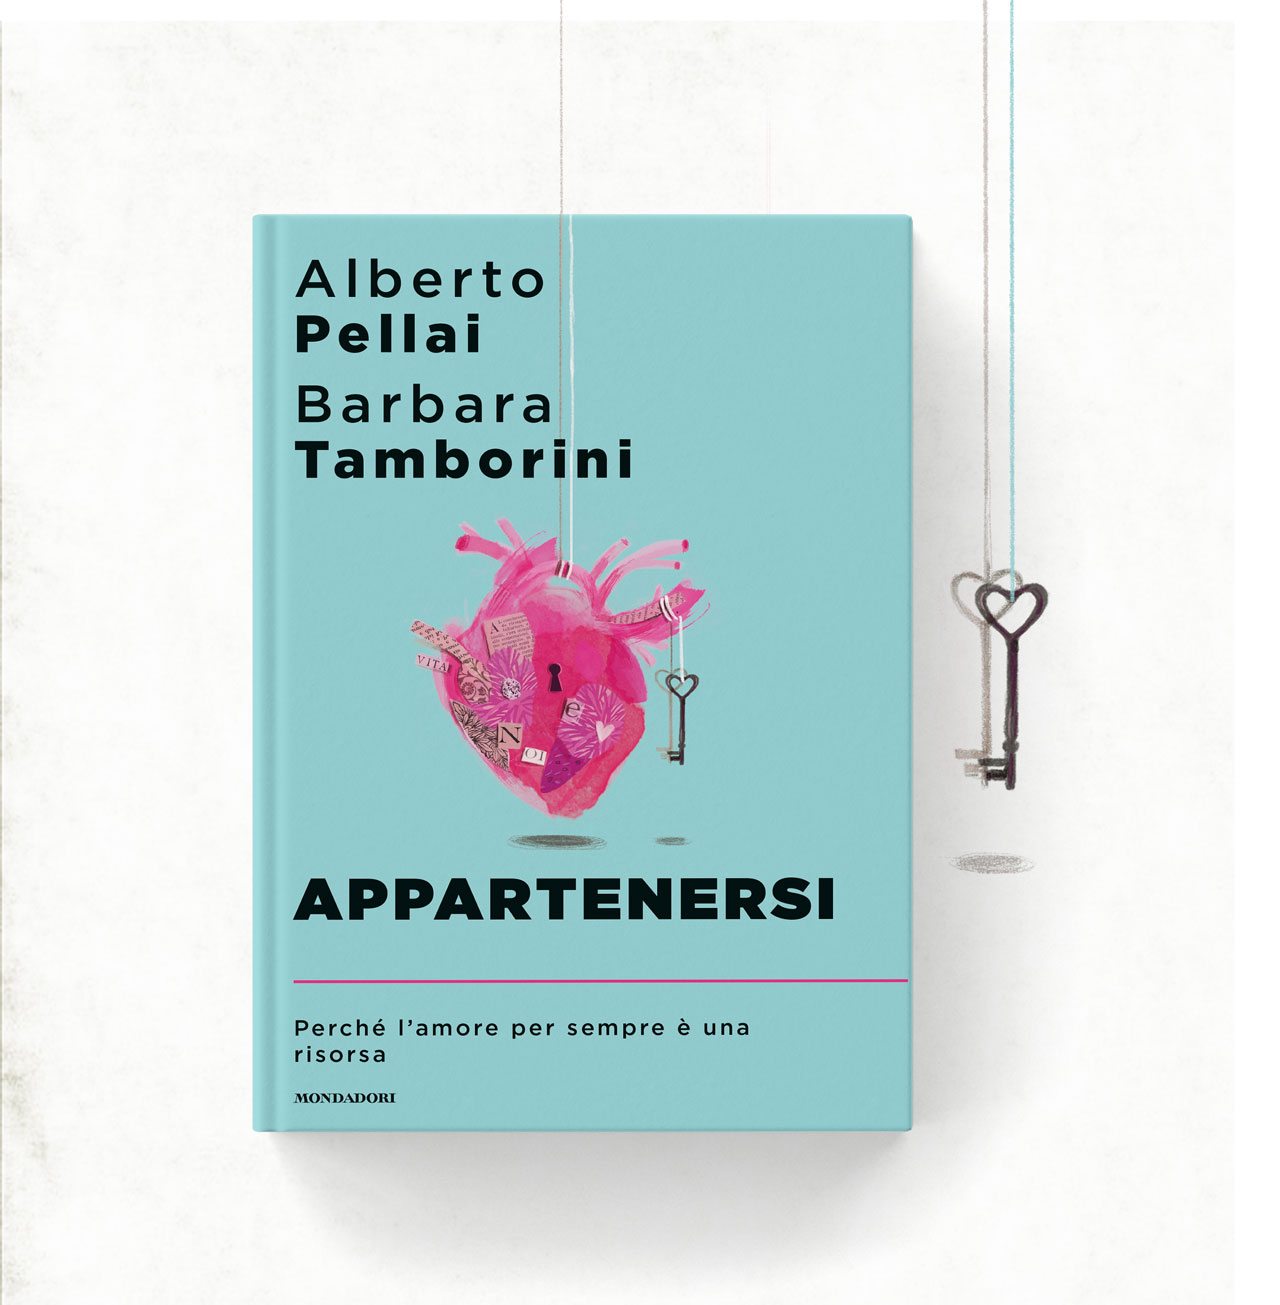 Illustrazione realizzata per la cover del libro Appartenersi, scritto da Alberto Pellai e Barbara Tamborini, Mondadori